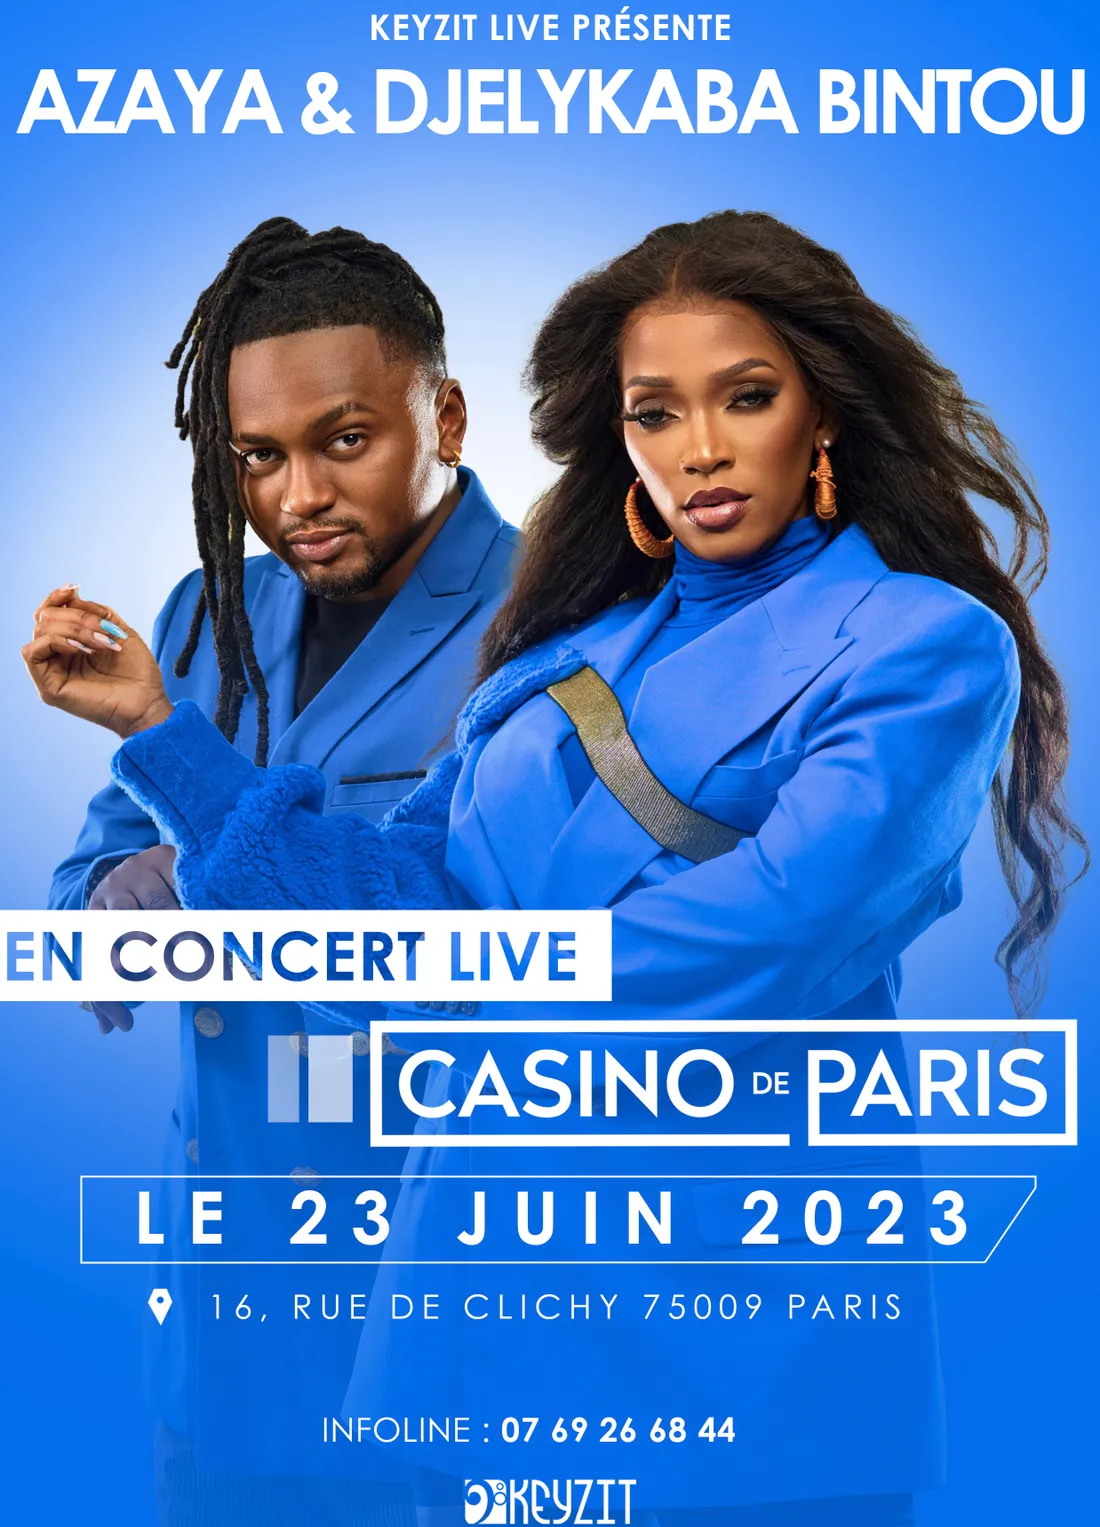 Concert Azaya & Djelykaba Bintou le Vendredi 23 Juin 2023 au Casino de paris